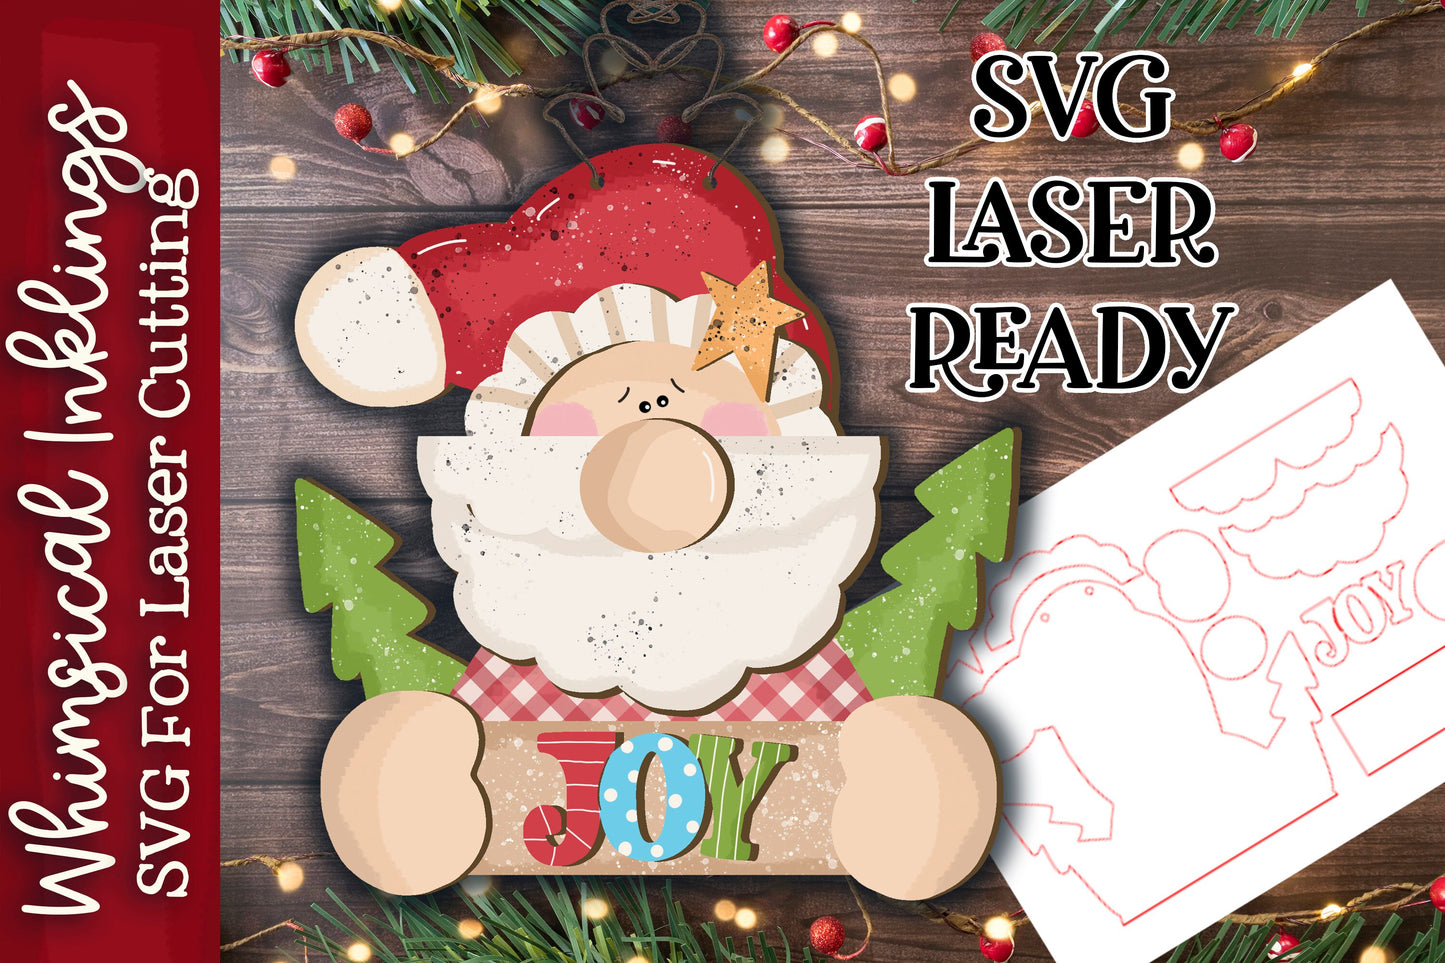 Joy Santy Claus Ornament SVG| Santa Claus SVG| Laser Cut Snowman Ornament| Glow forge| Ornament SVG